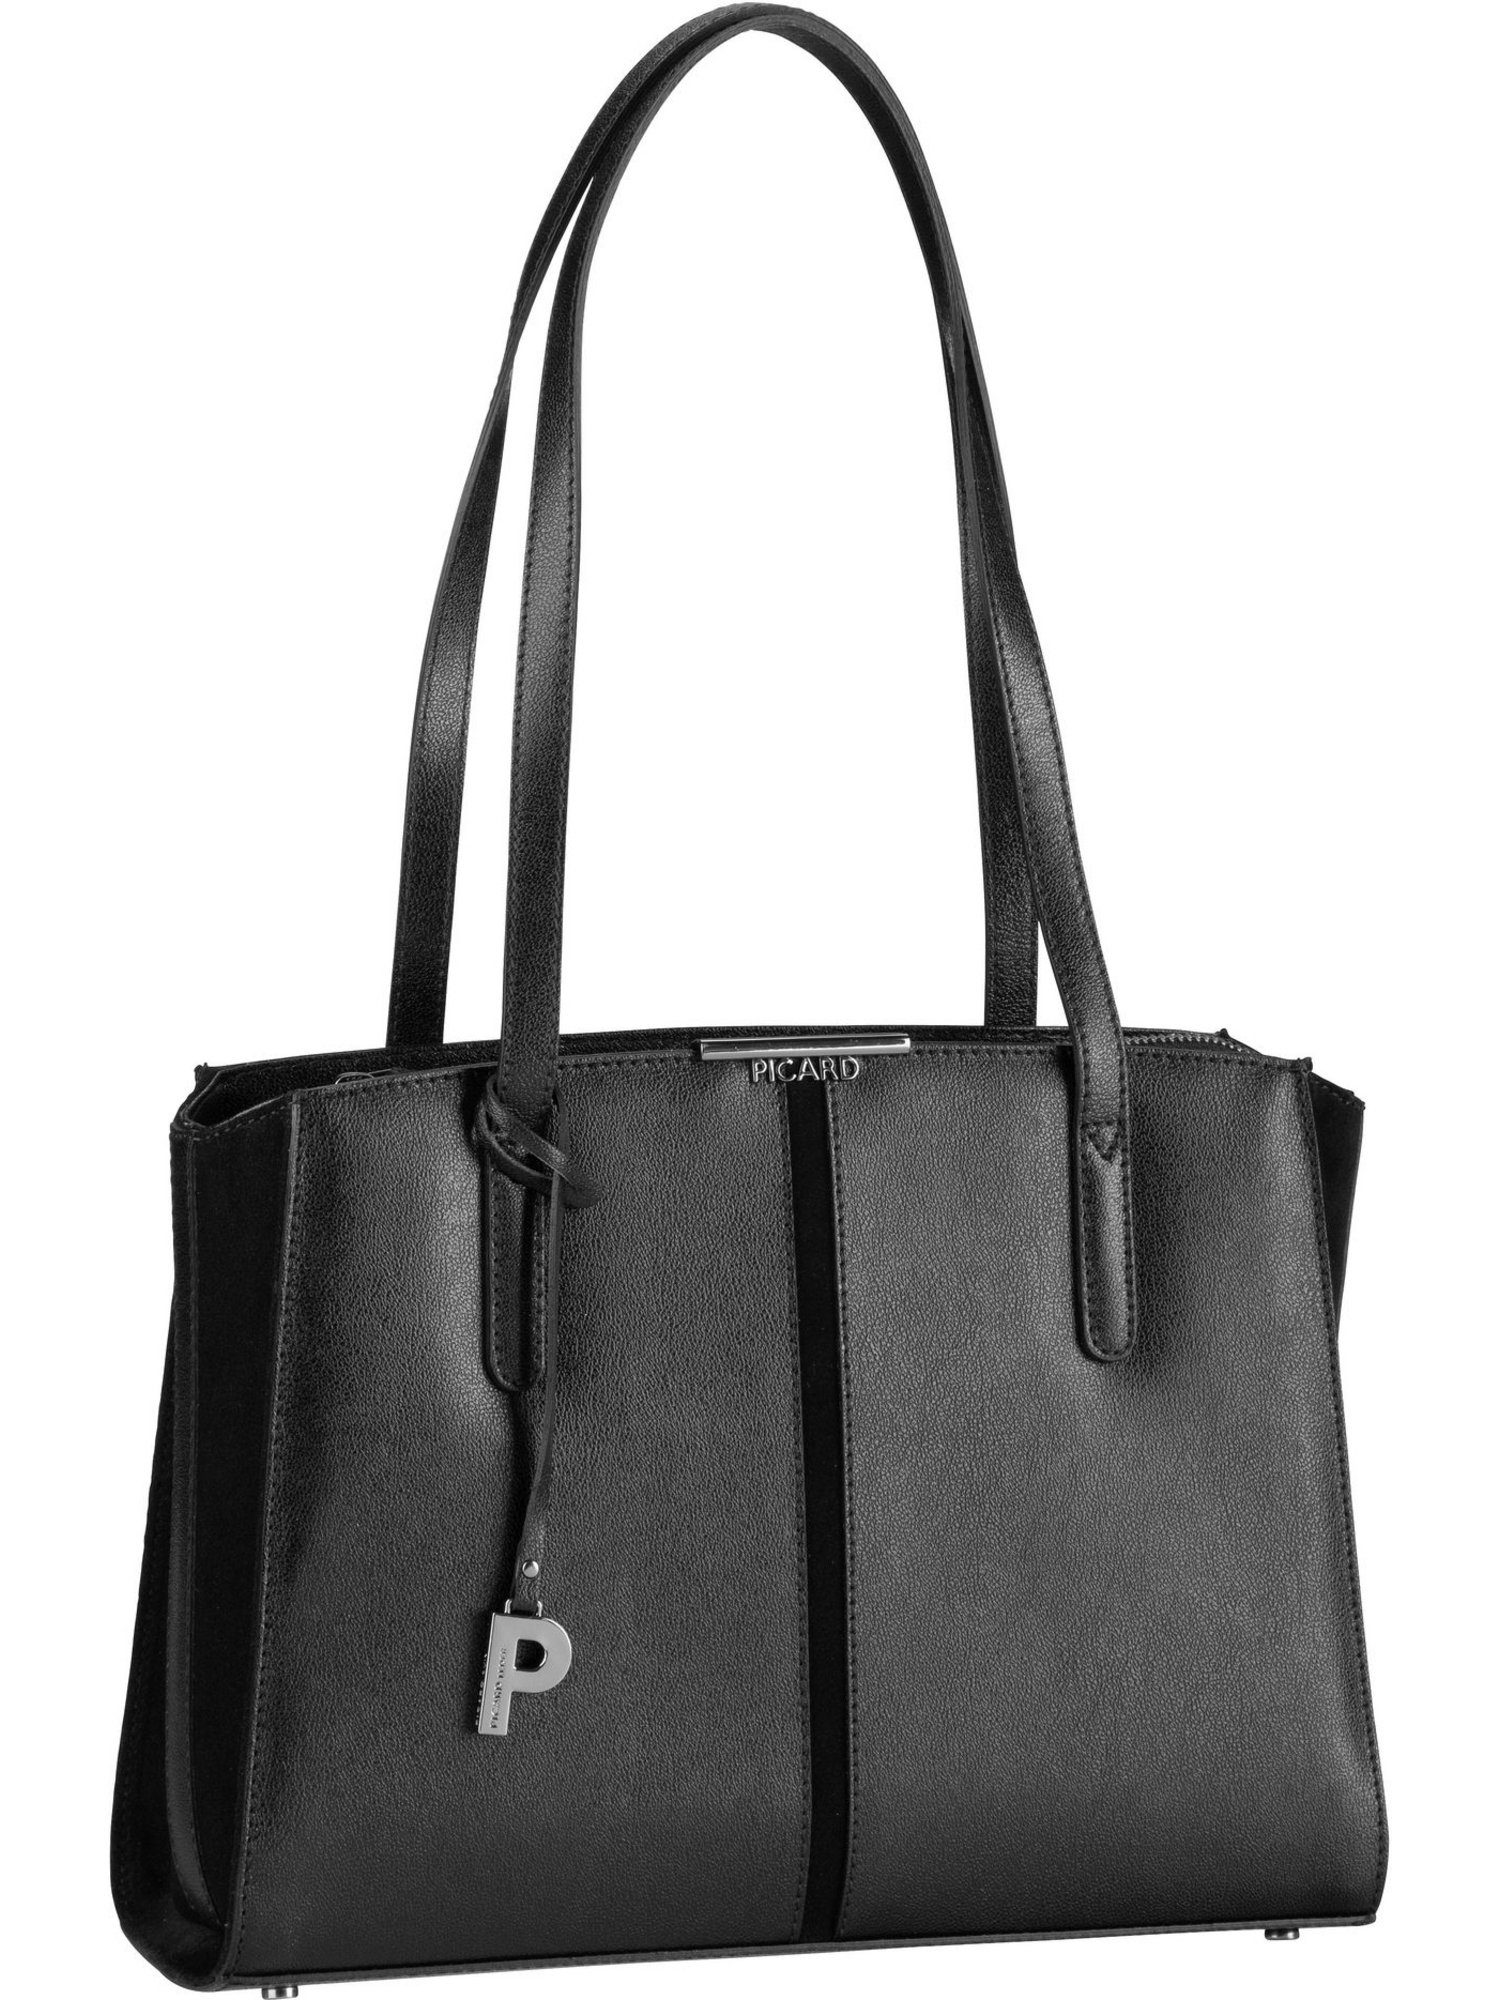 Picard Handtasche »Marie 5247«, Shopper online kaufen | OTTO